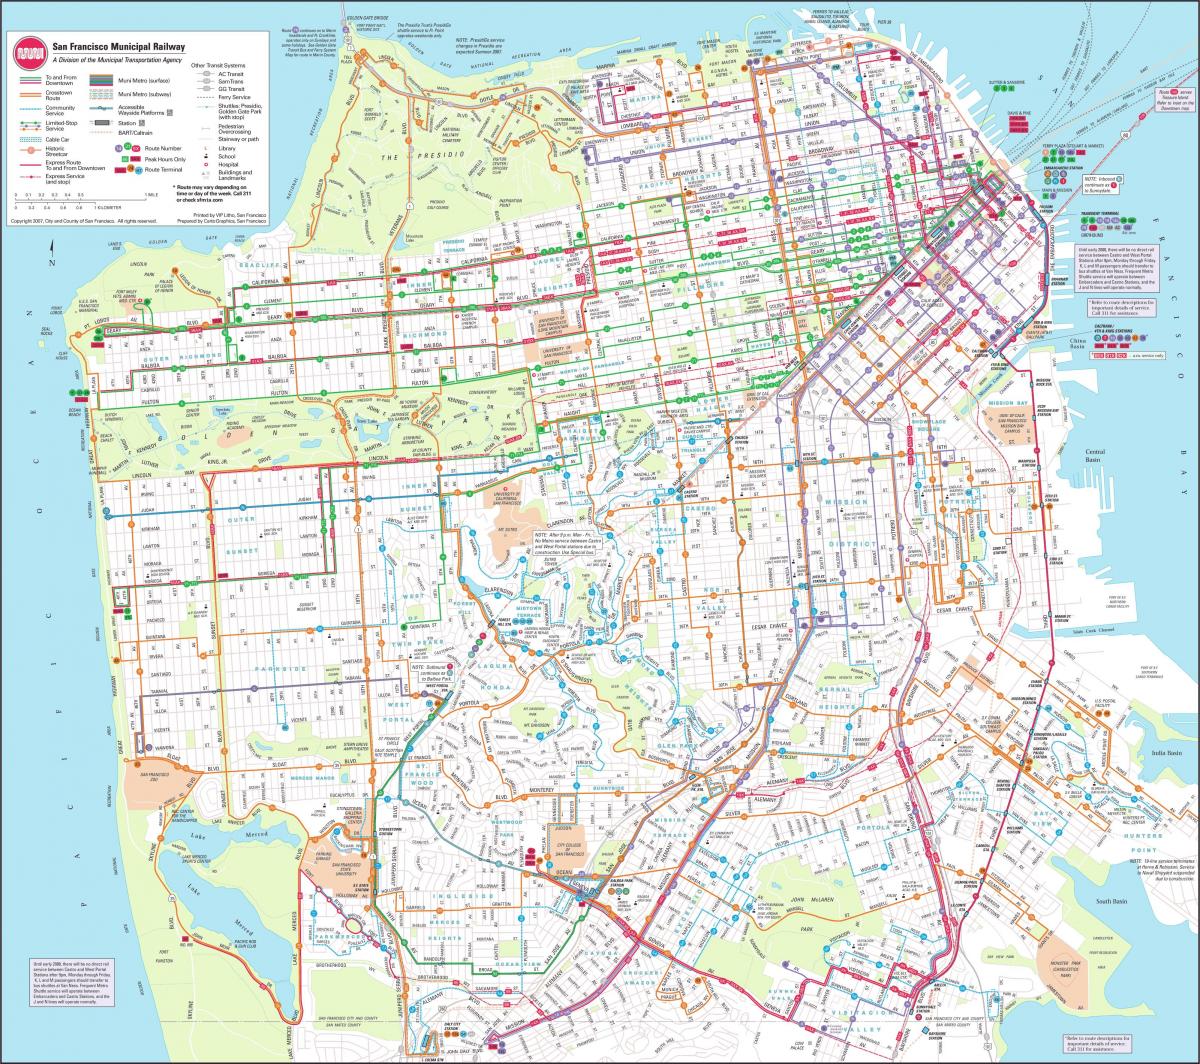 Mapu San Francisco železničnej